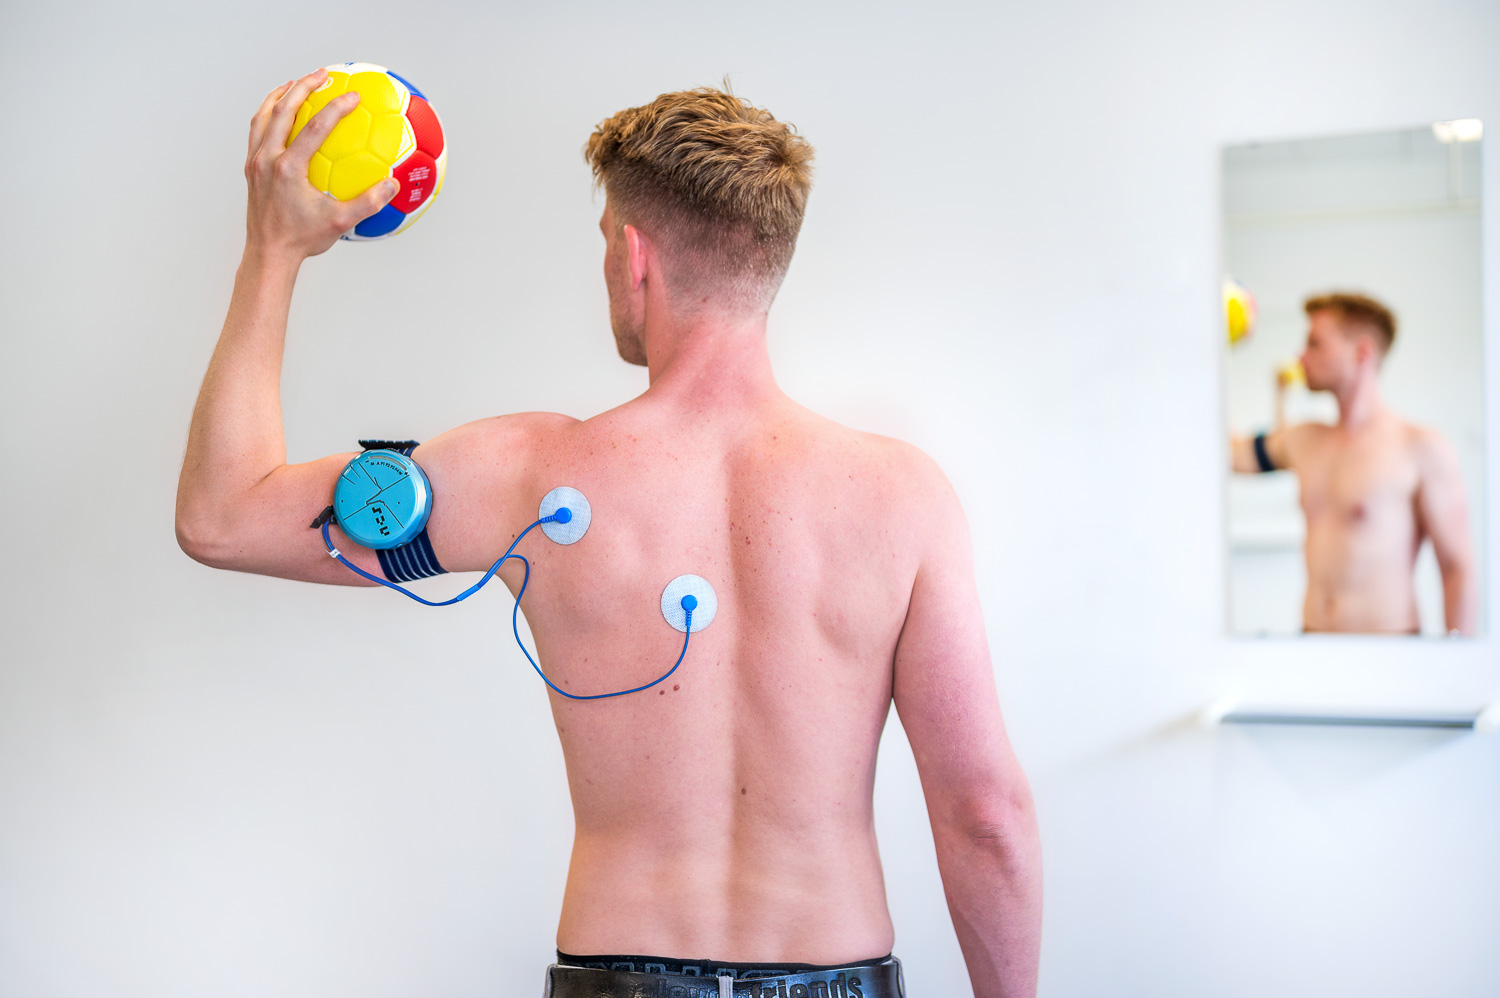 Patient ist von hinten zu sehen mit dem Shoulder Pacemaker an der linken Schulter und hält dabei einen Handball in der Hand.